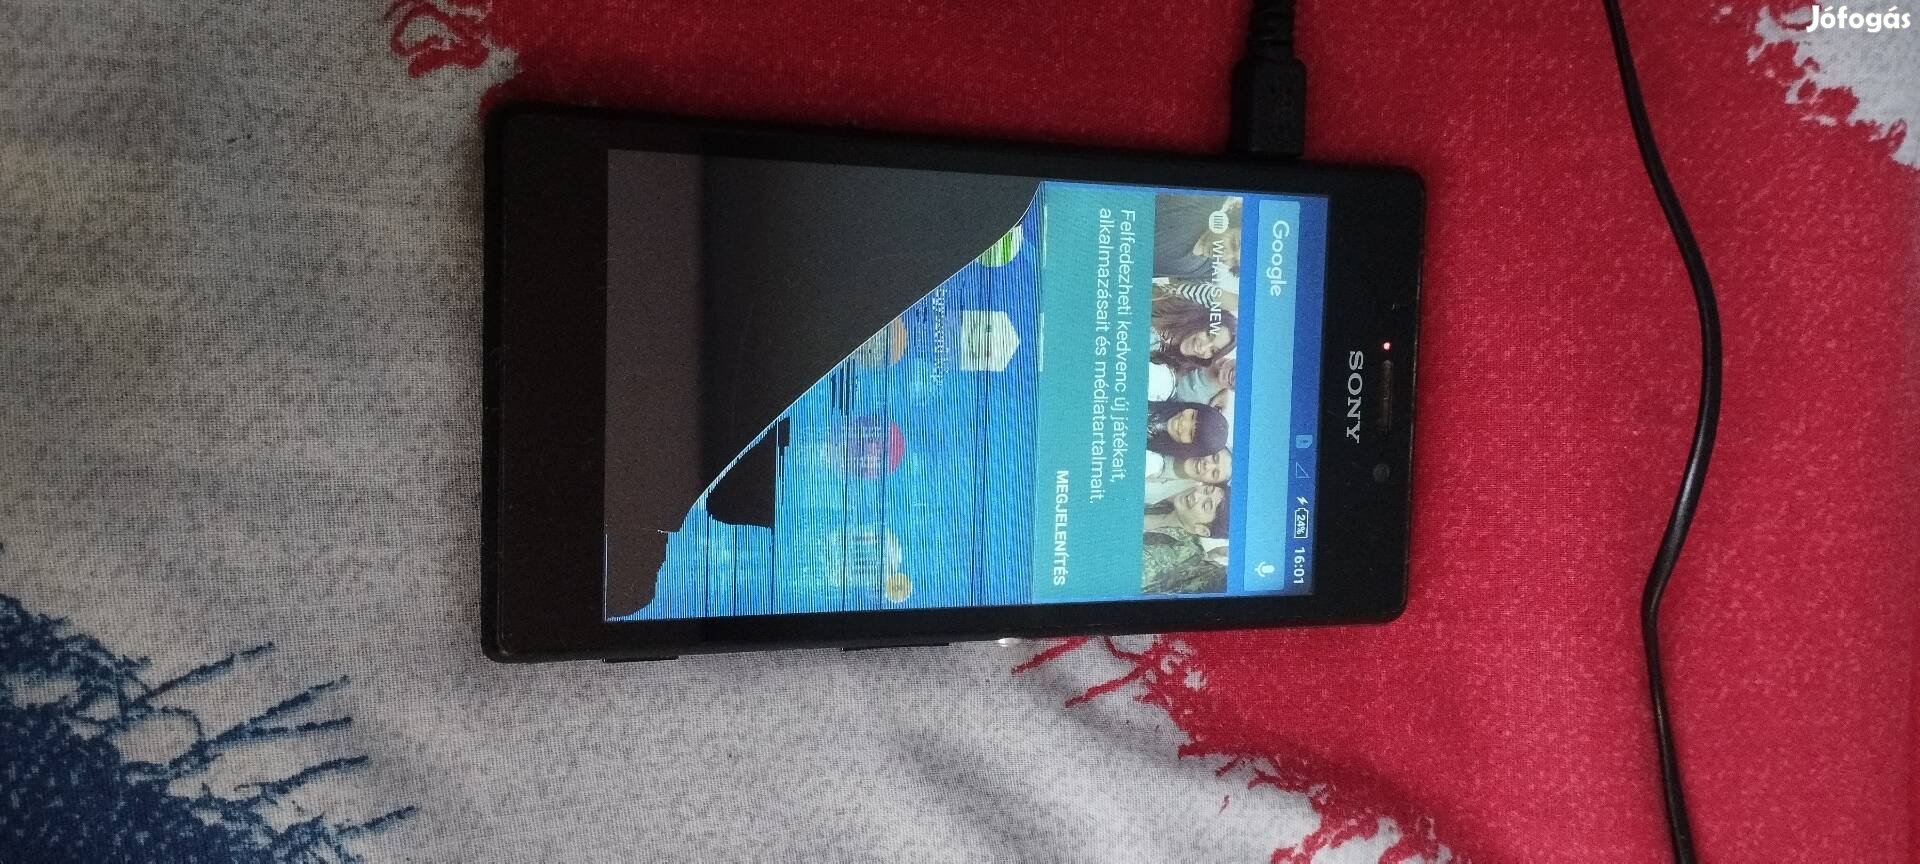 Sony Xperia telefon 